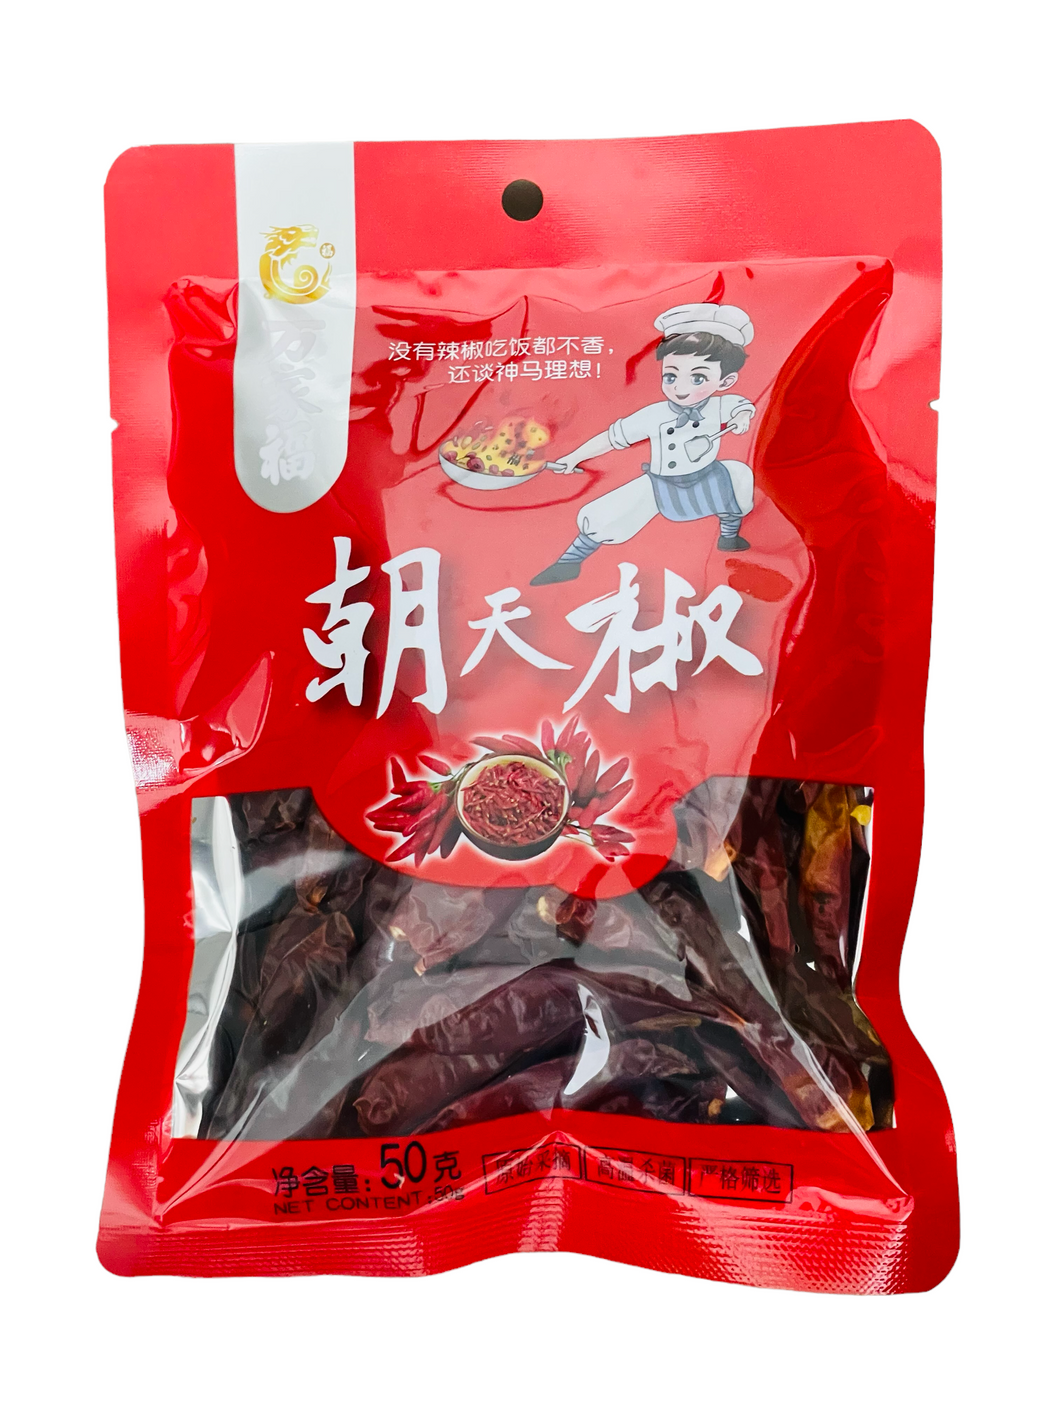 WJF Whole Dried Chili 万家福朝天椒 50g